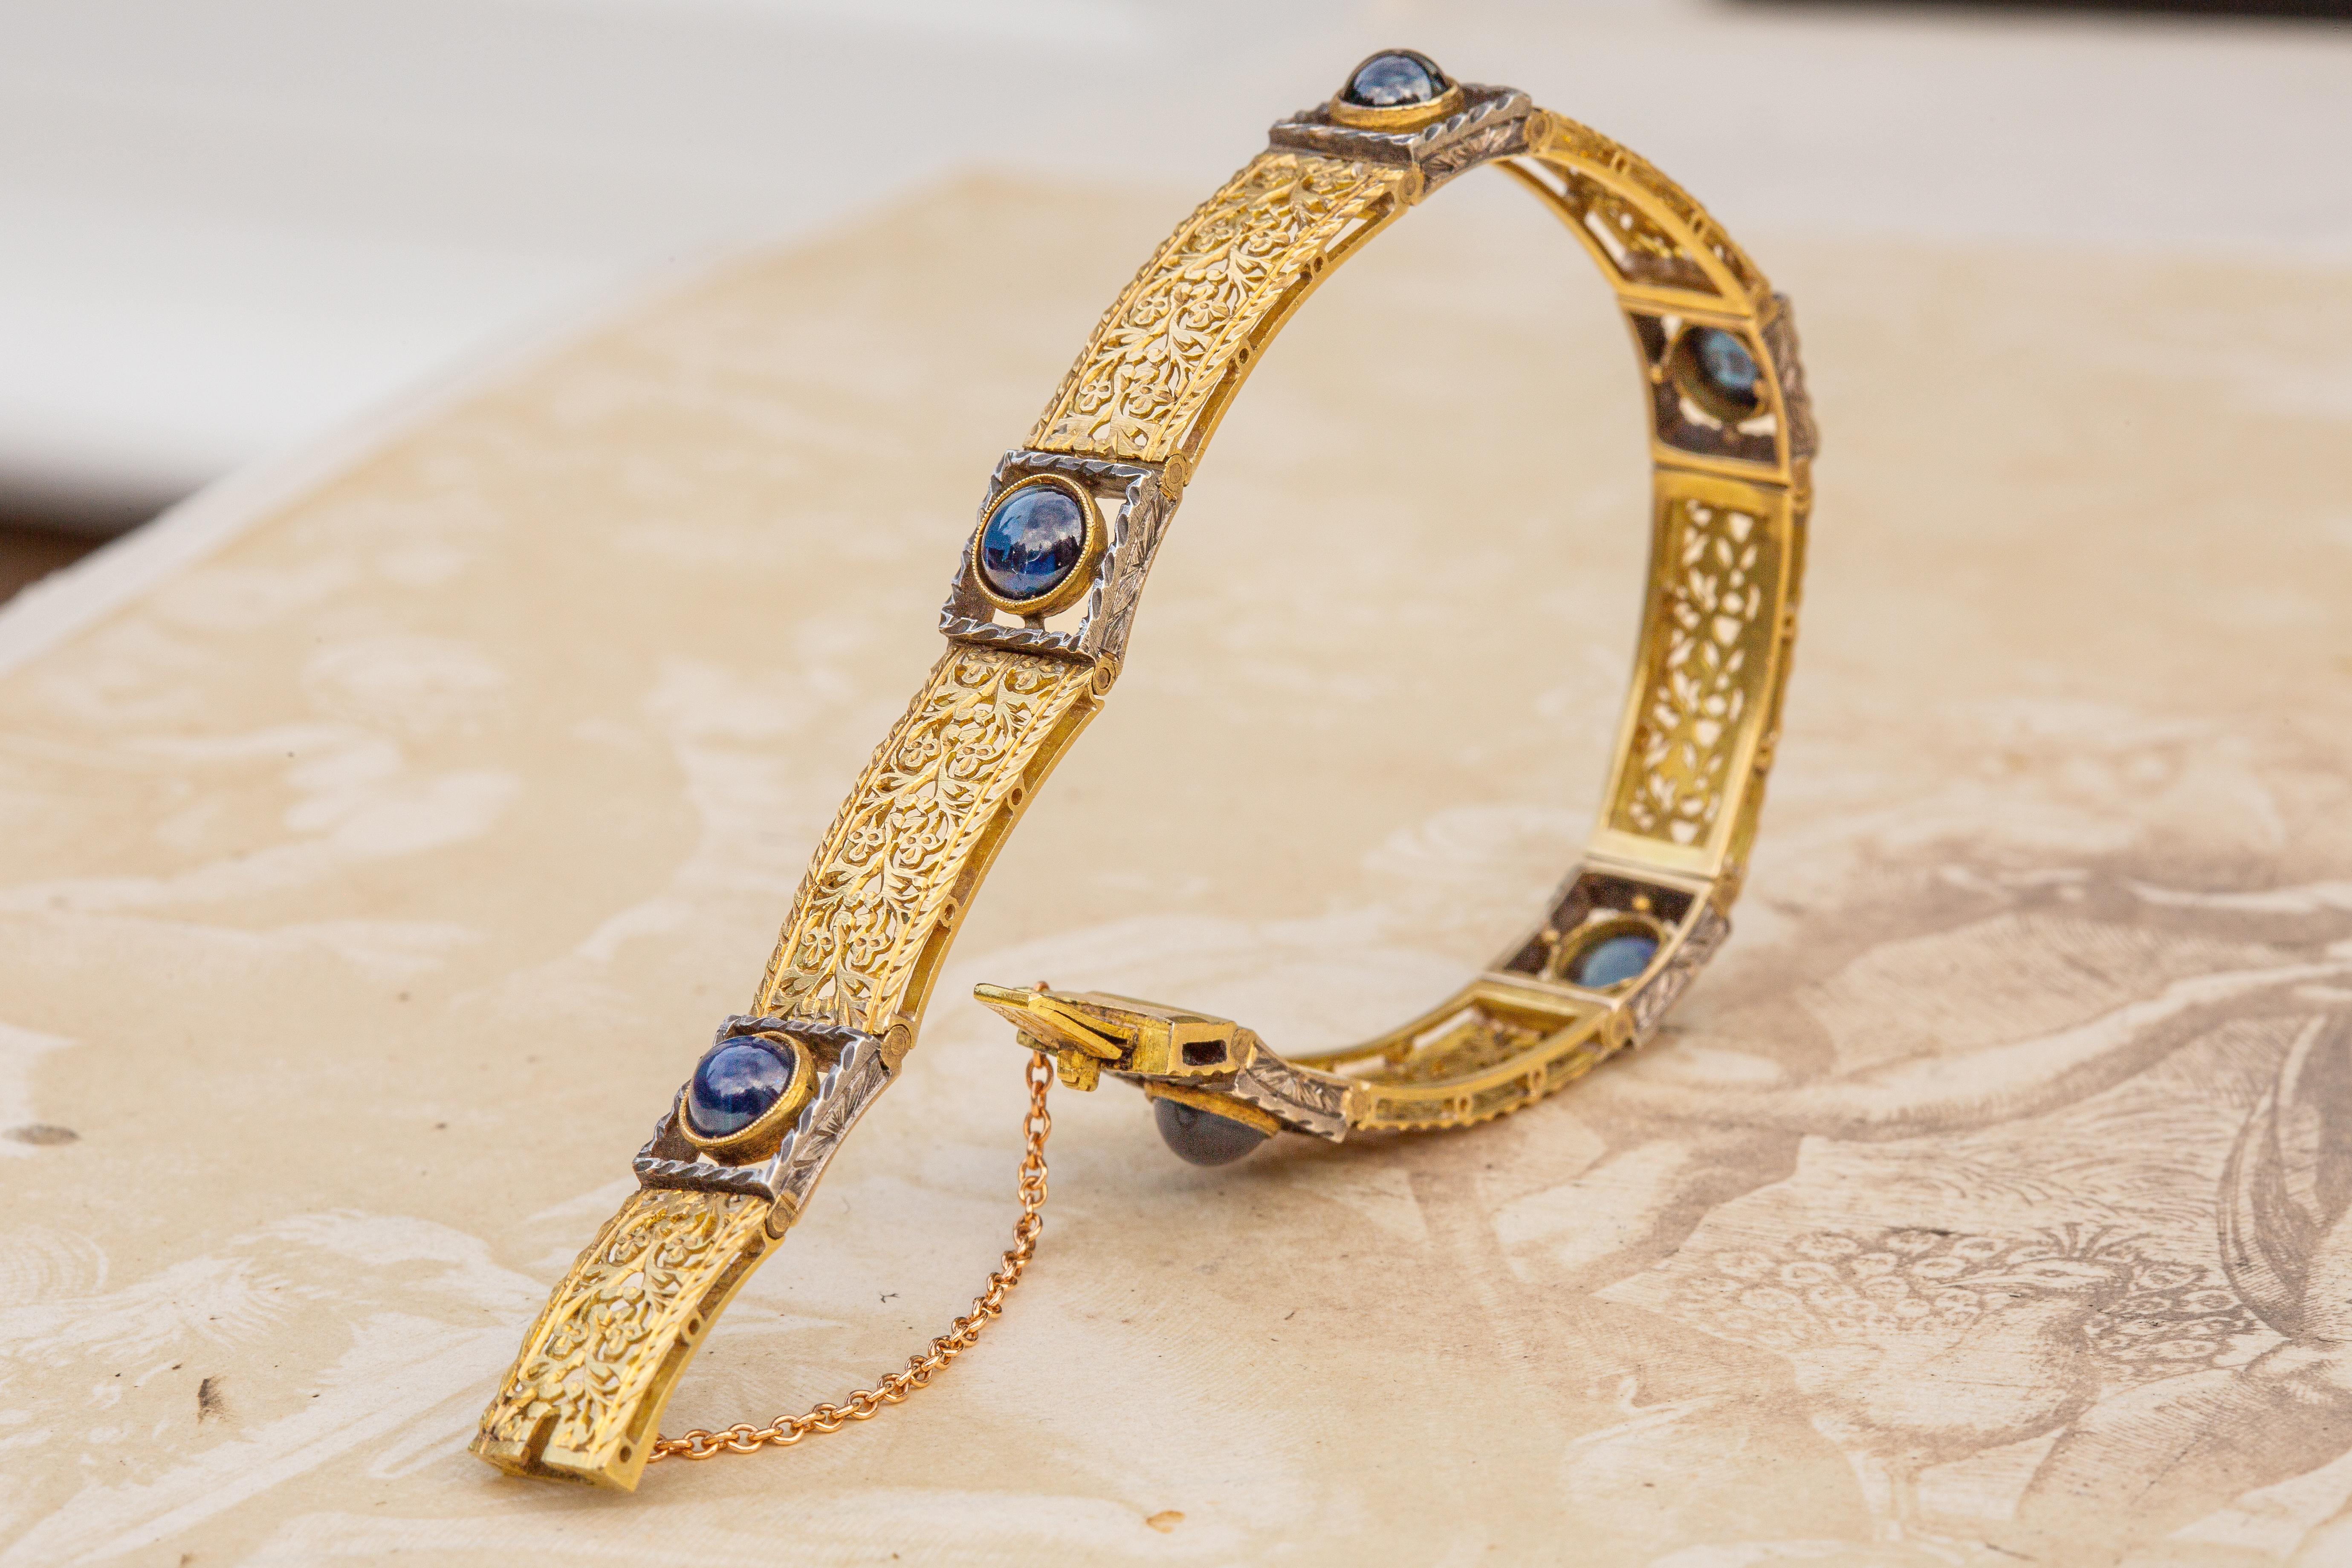 Cabochon Antique Art Nouveau 18K Gold Bracelet with Sapphires c.1900